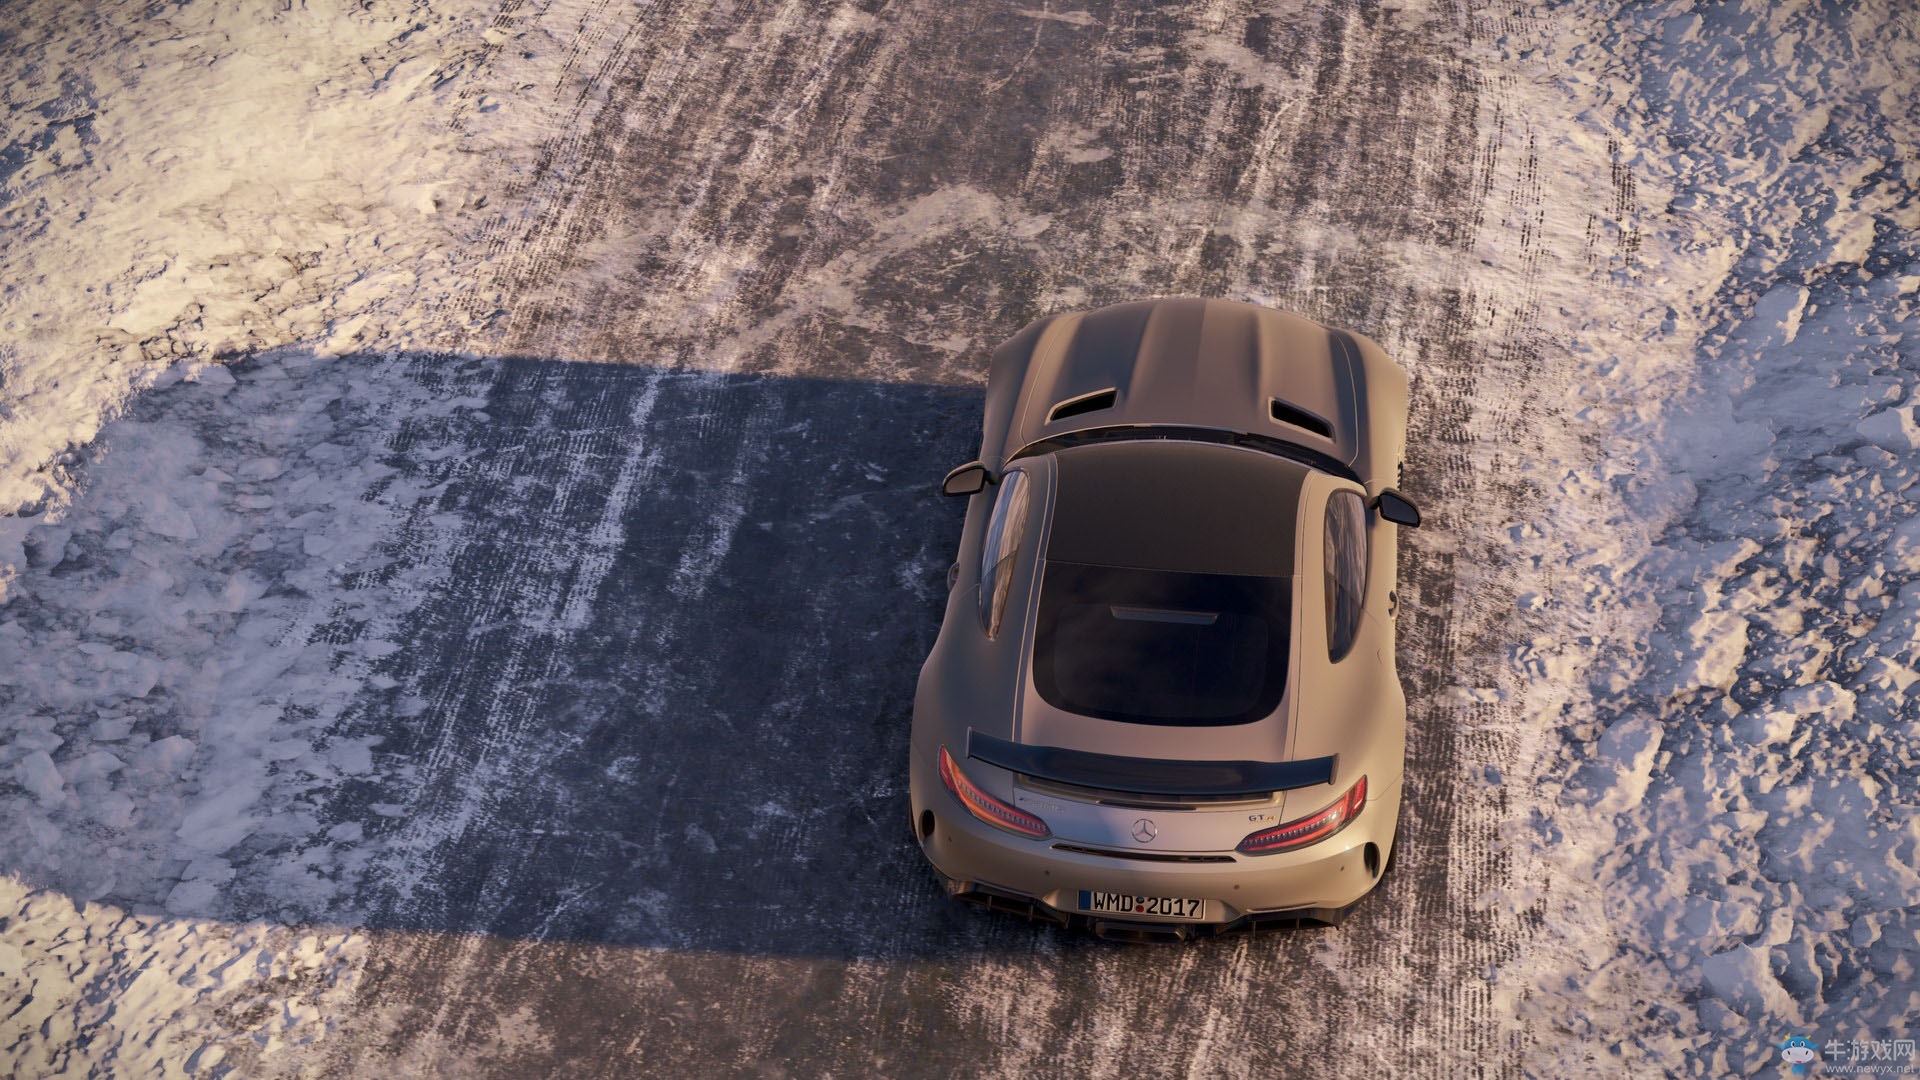 《赛车计划2》全新游戏截图公布 大量豪车现身